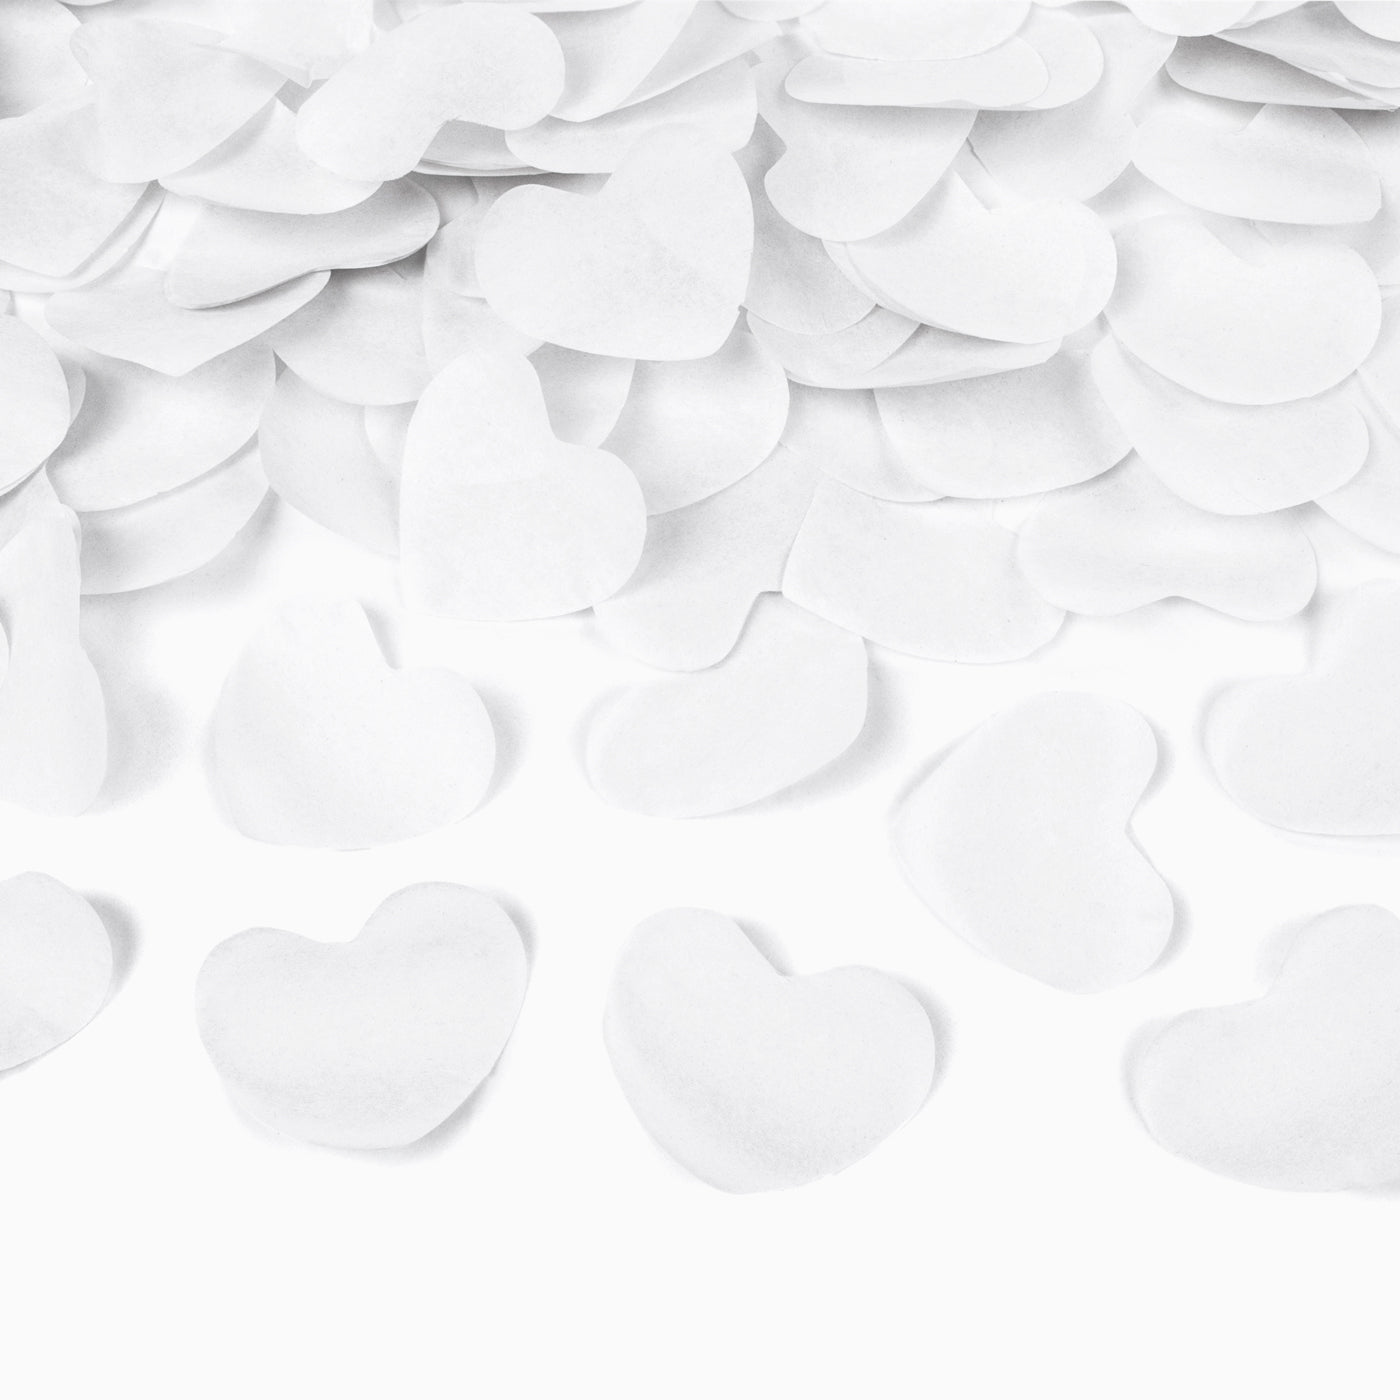 Confeti white hearts 60 cm biodegradable paper